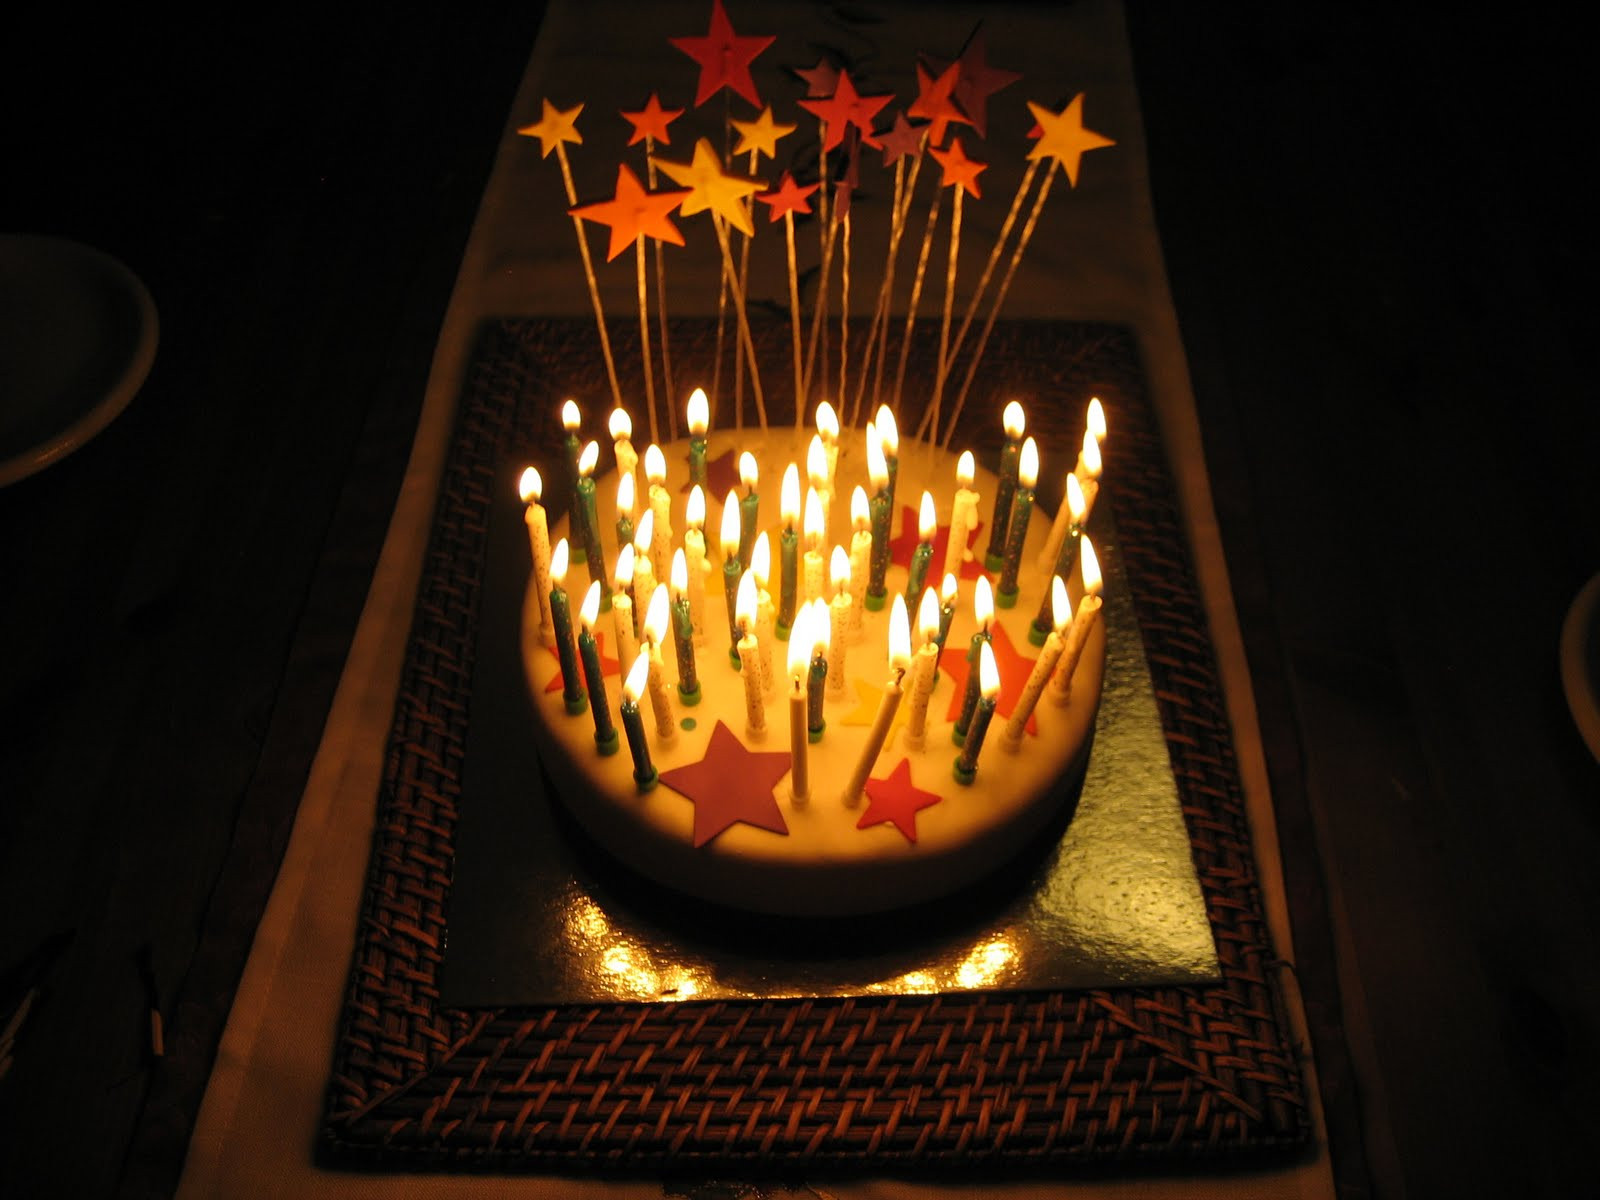 Best ideas about Birthday Cake On Fire
. Save or Pin DarkDwarf Blog Birthday Cake Fire Hazard Now.